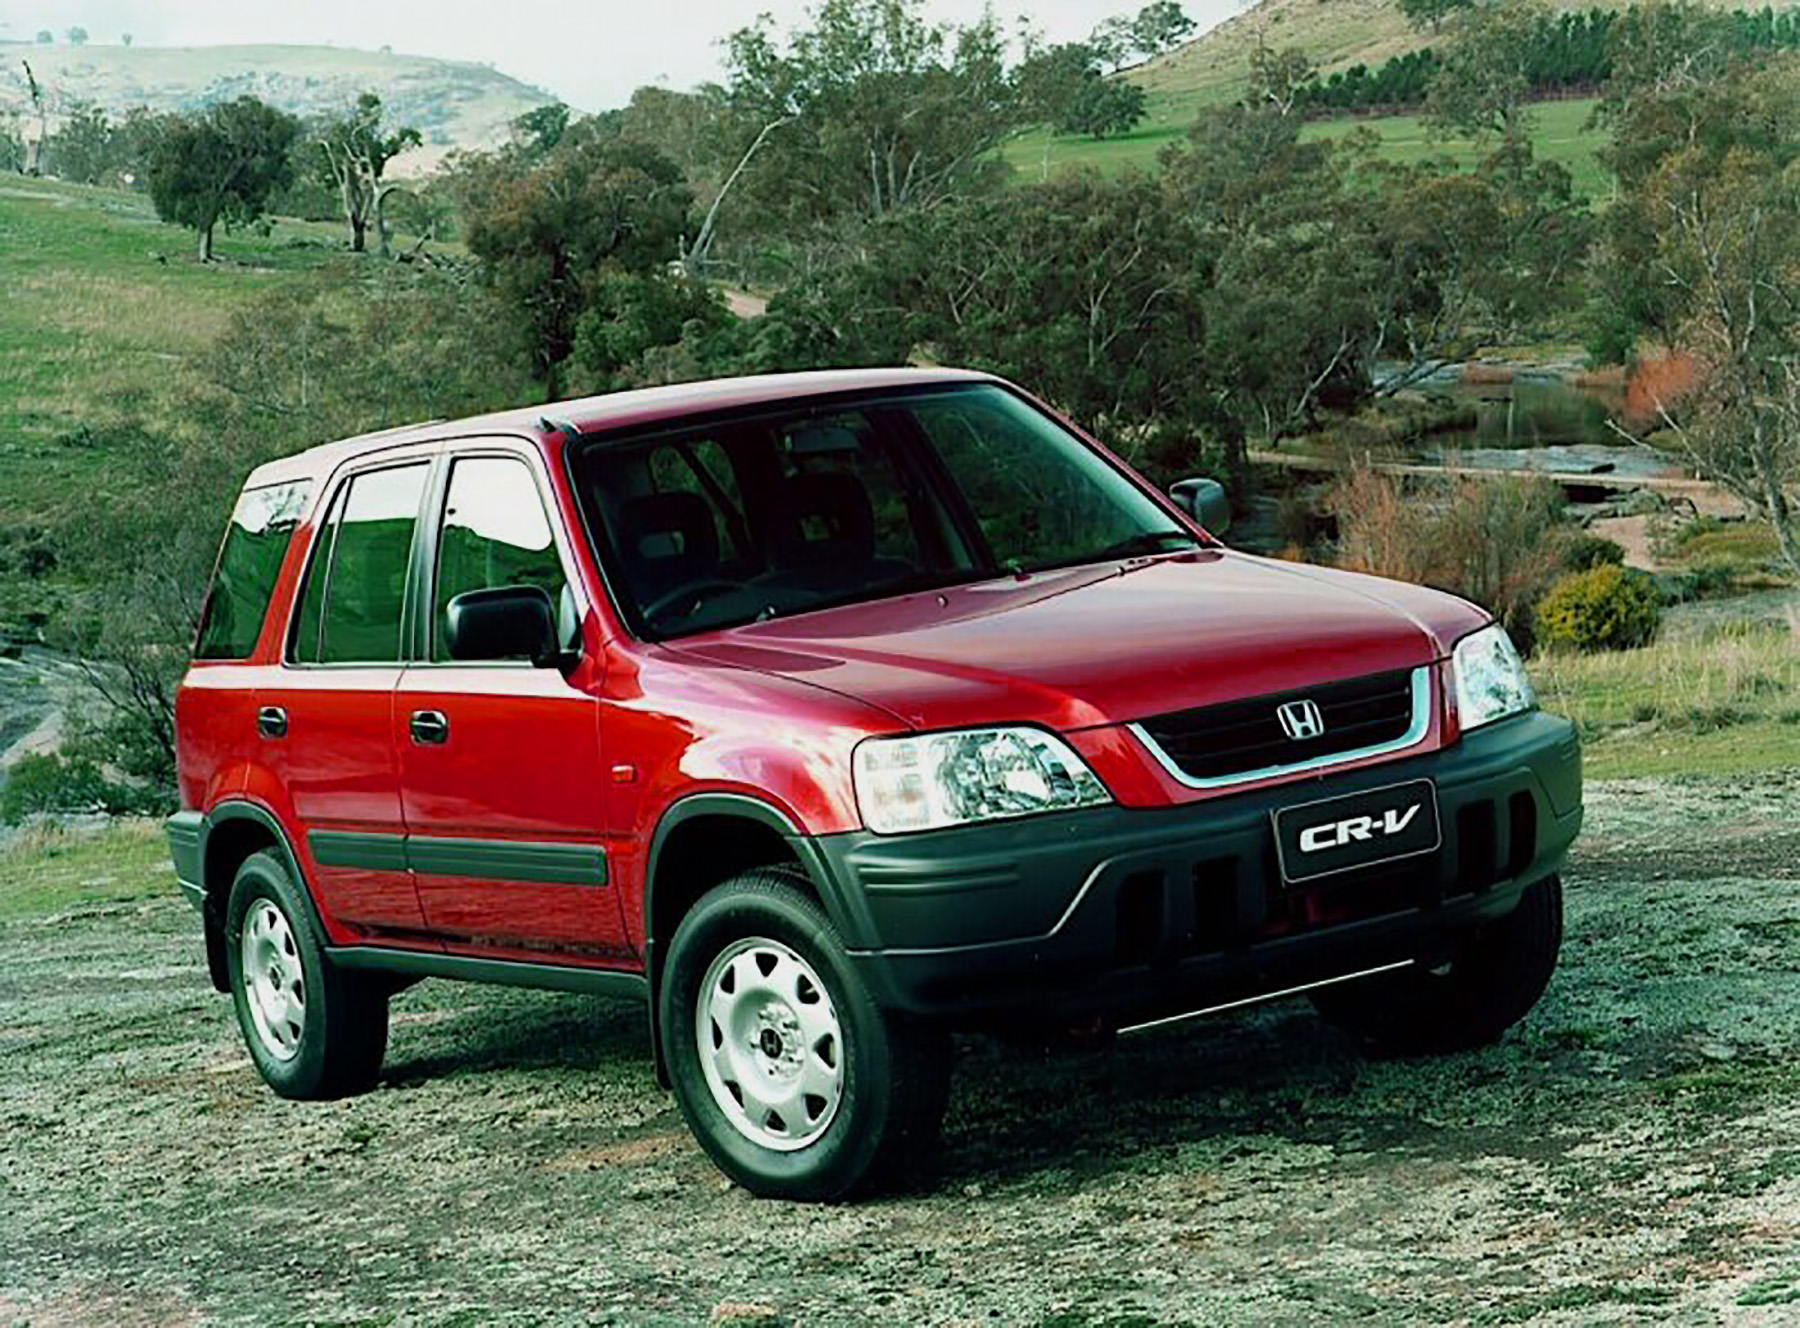 Honda cr v rd5. Honda CRV 1997. Honda CRV rd1. Honda CR-V rd1 1997. Honda CRV 1.